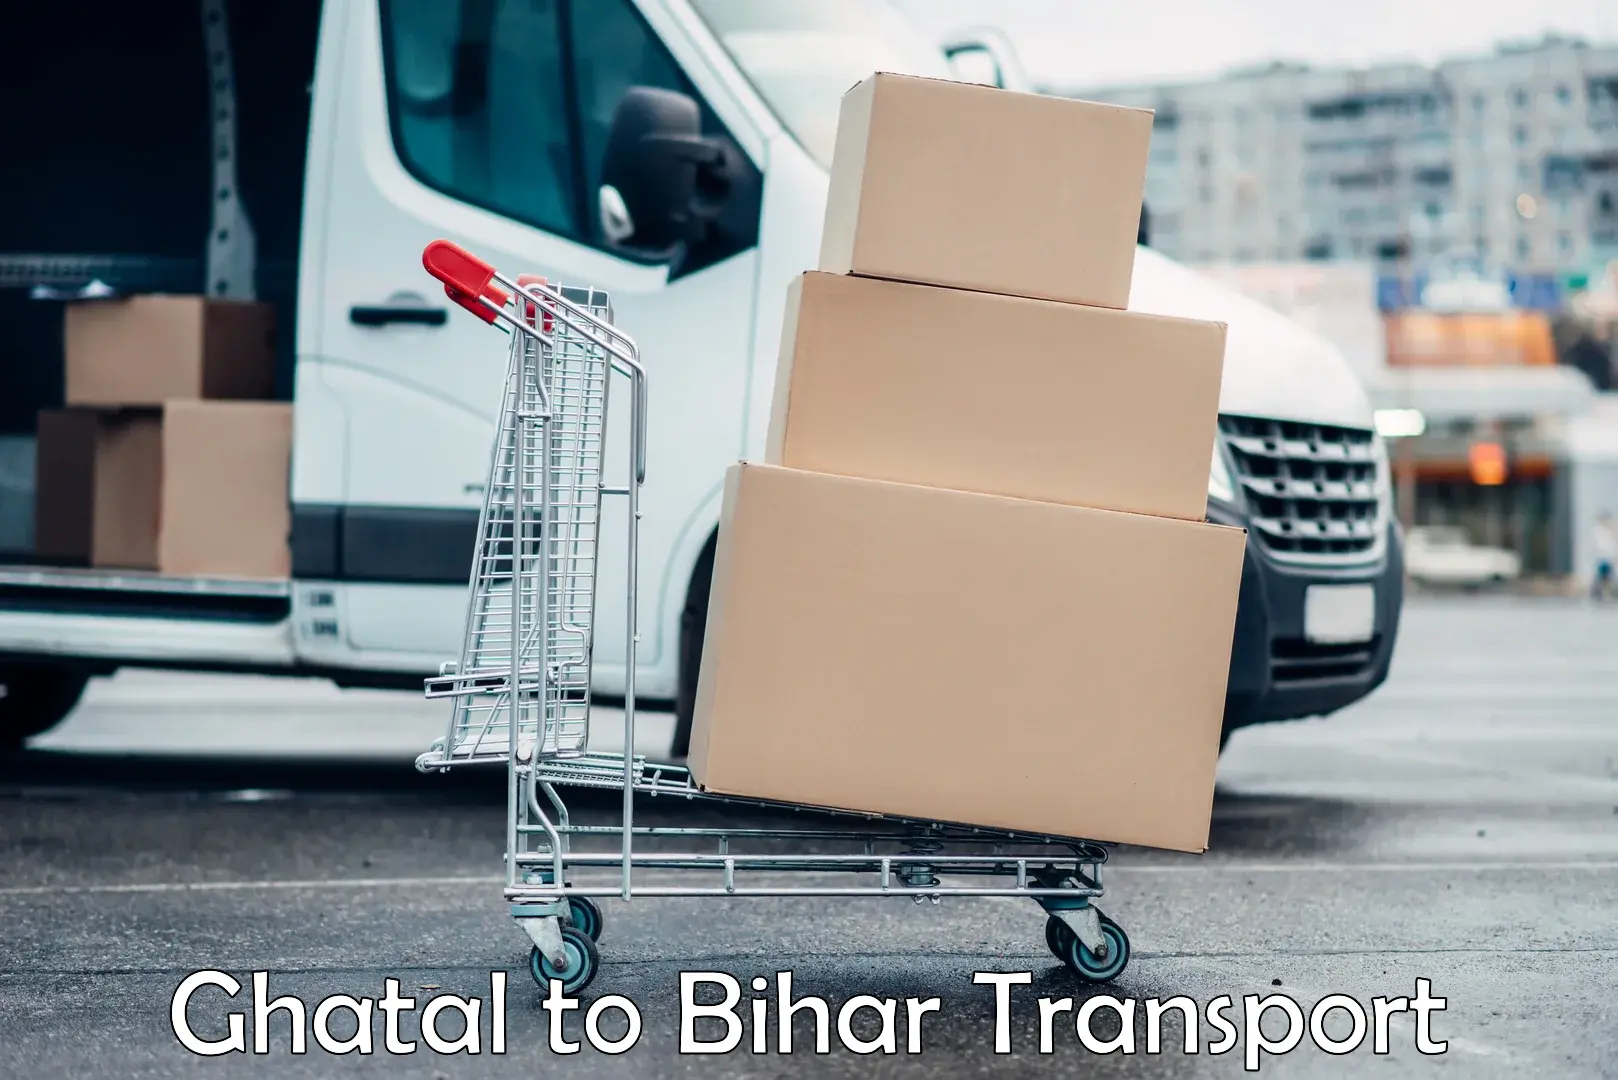 Transportation solution services Ghatal to Dehri